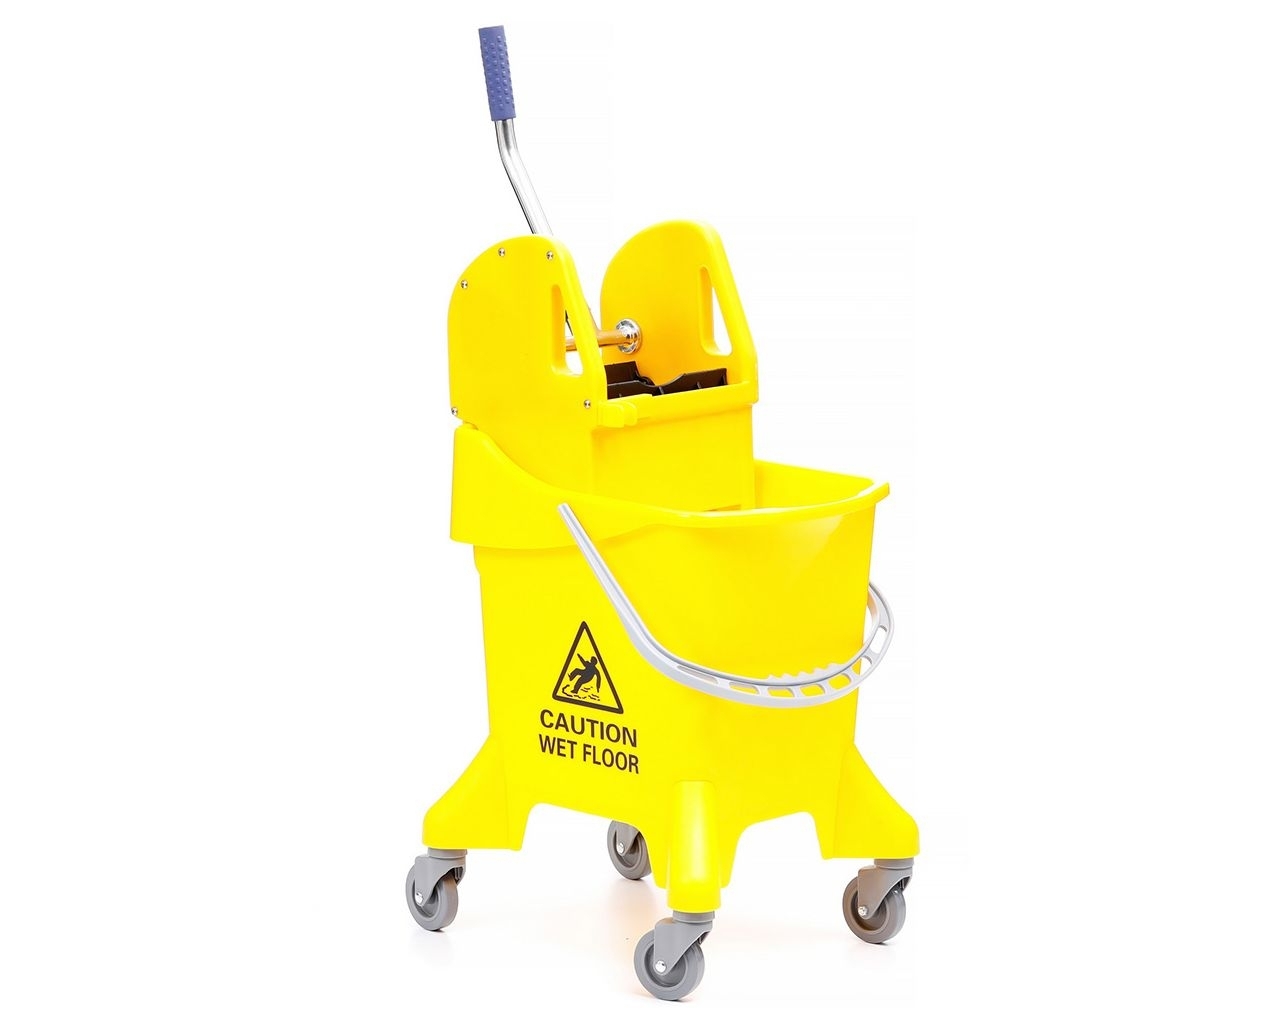 Wózek do sprzątania 31 litrów MERIDA z prasą do wyciskania mopów